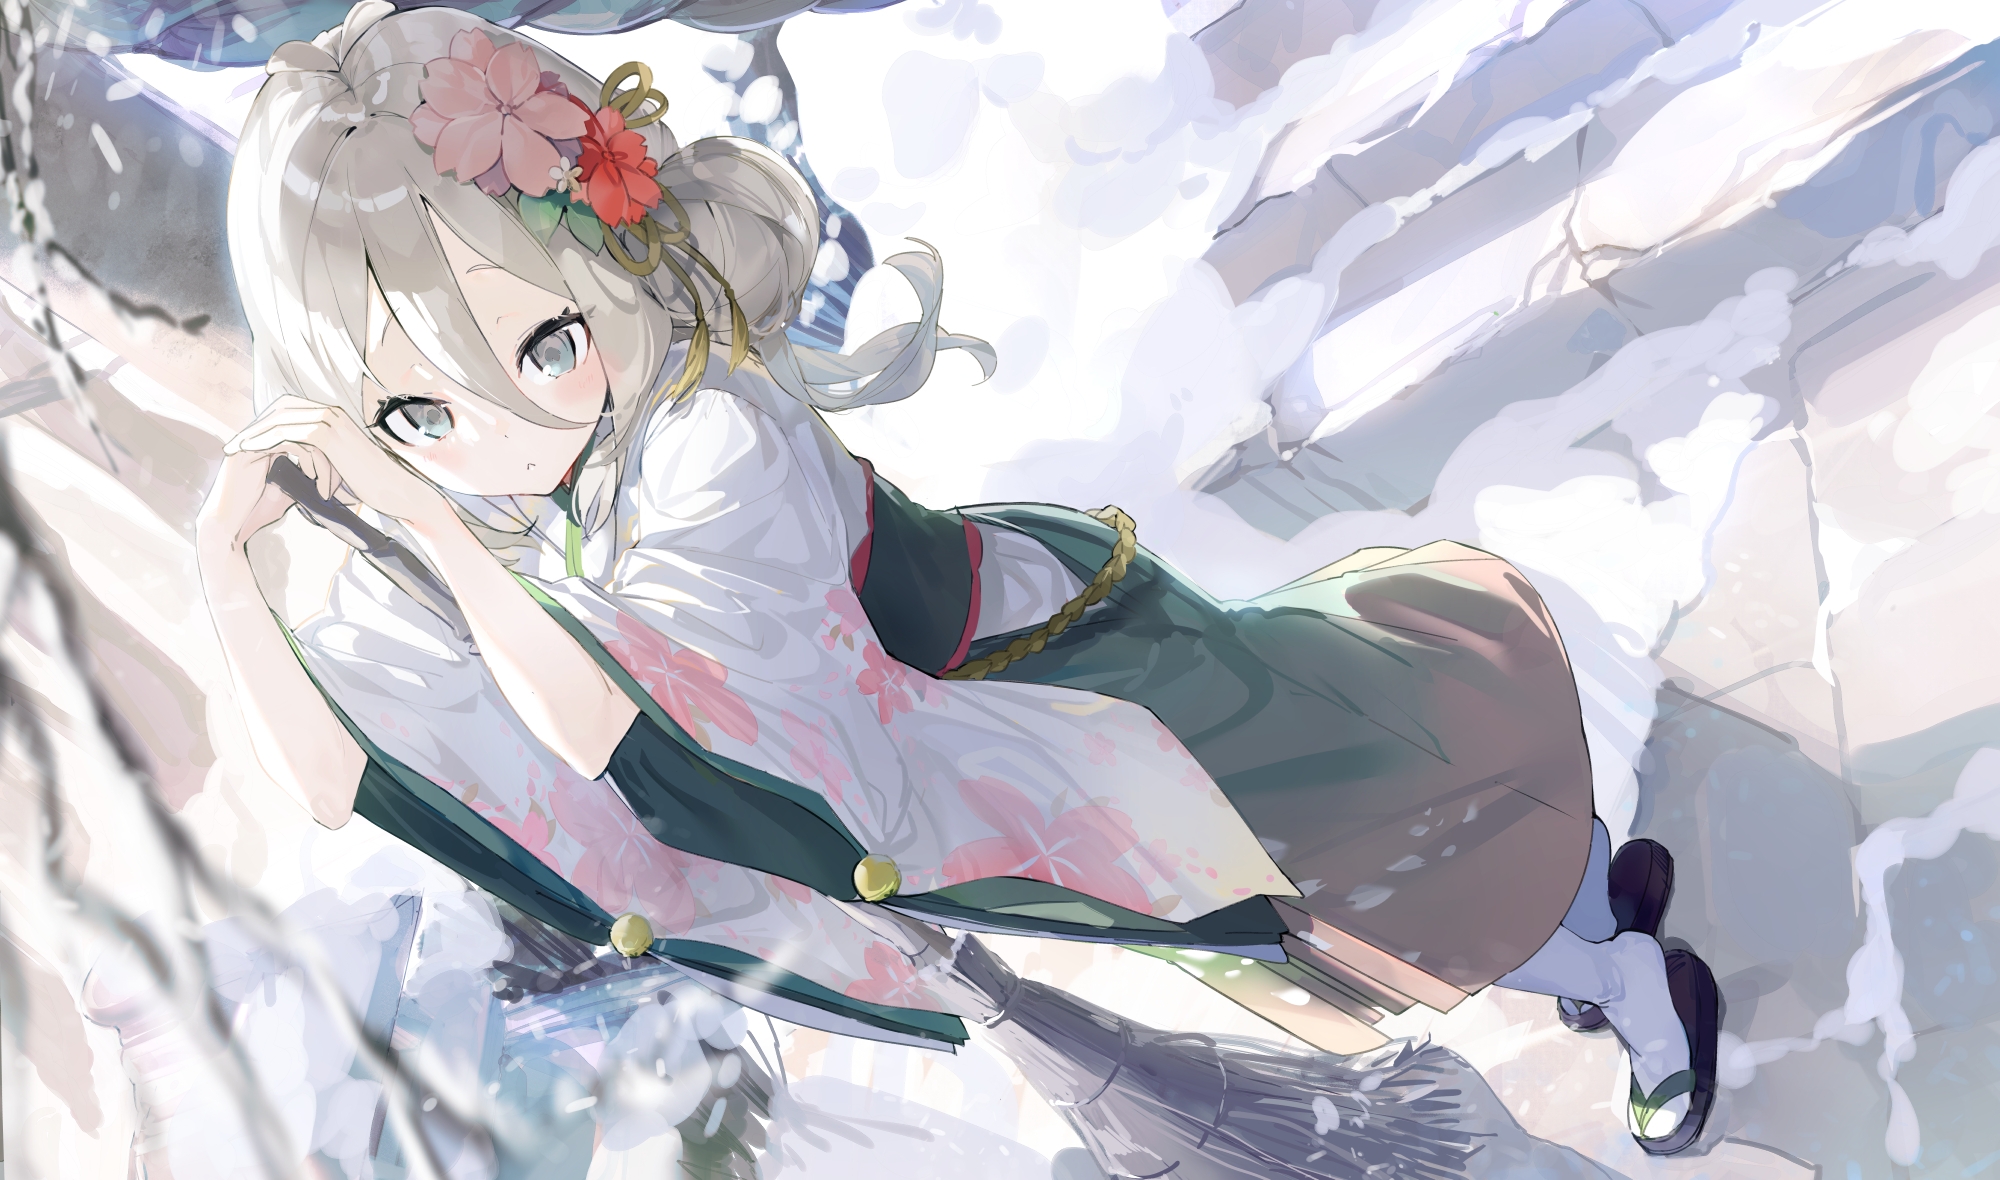 Фото принцесса подключается, лестницы, японская одежда, зима, снег, Wallpaper Kokkoro, разное - бесплатные картинки на Fonwall